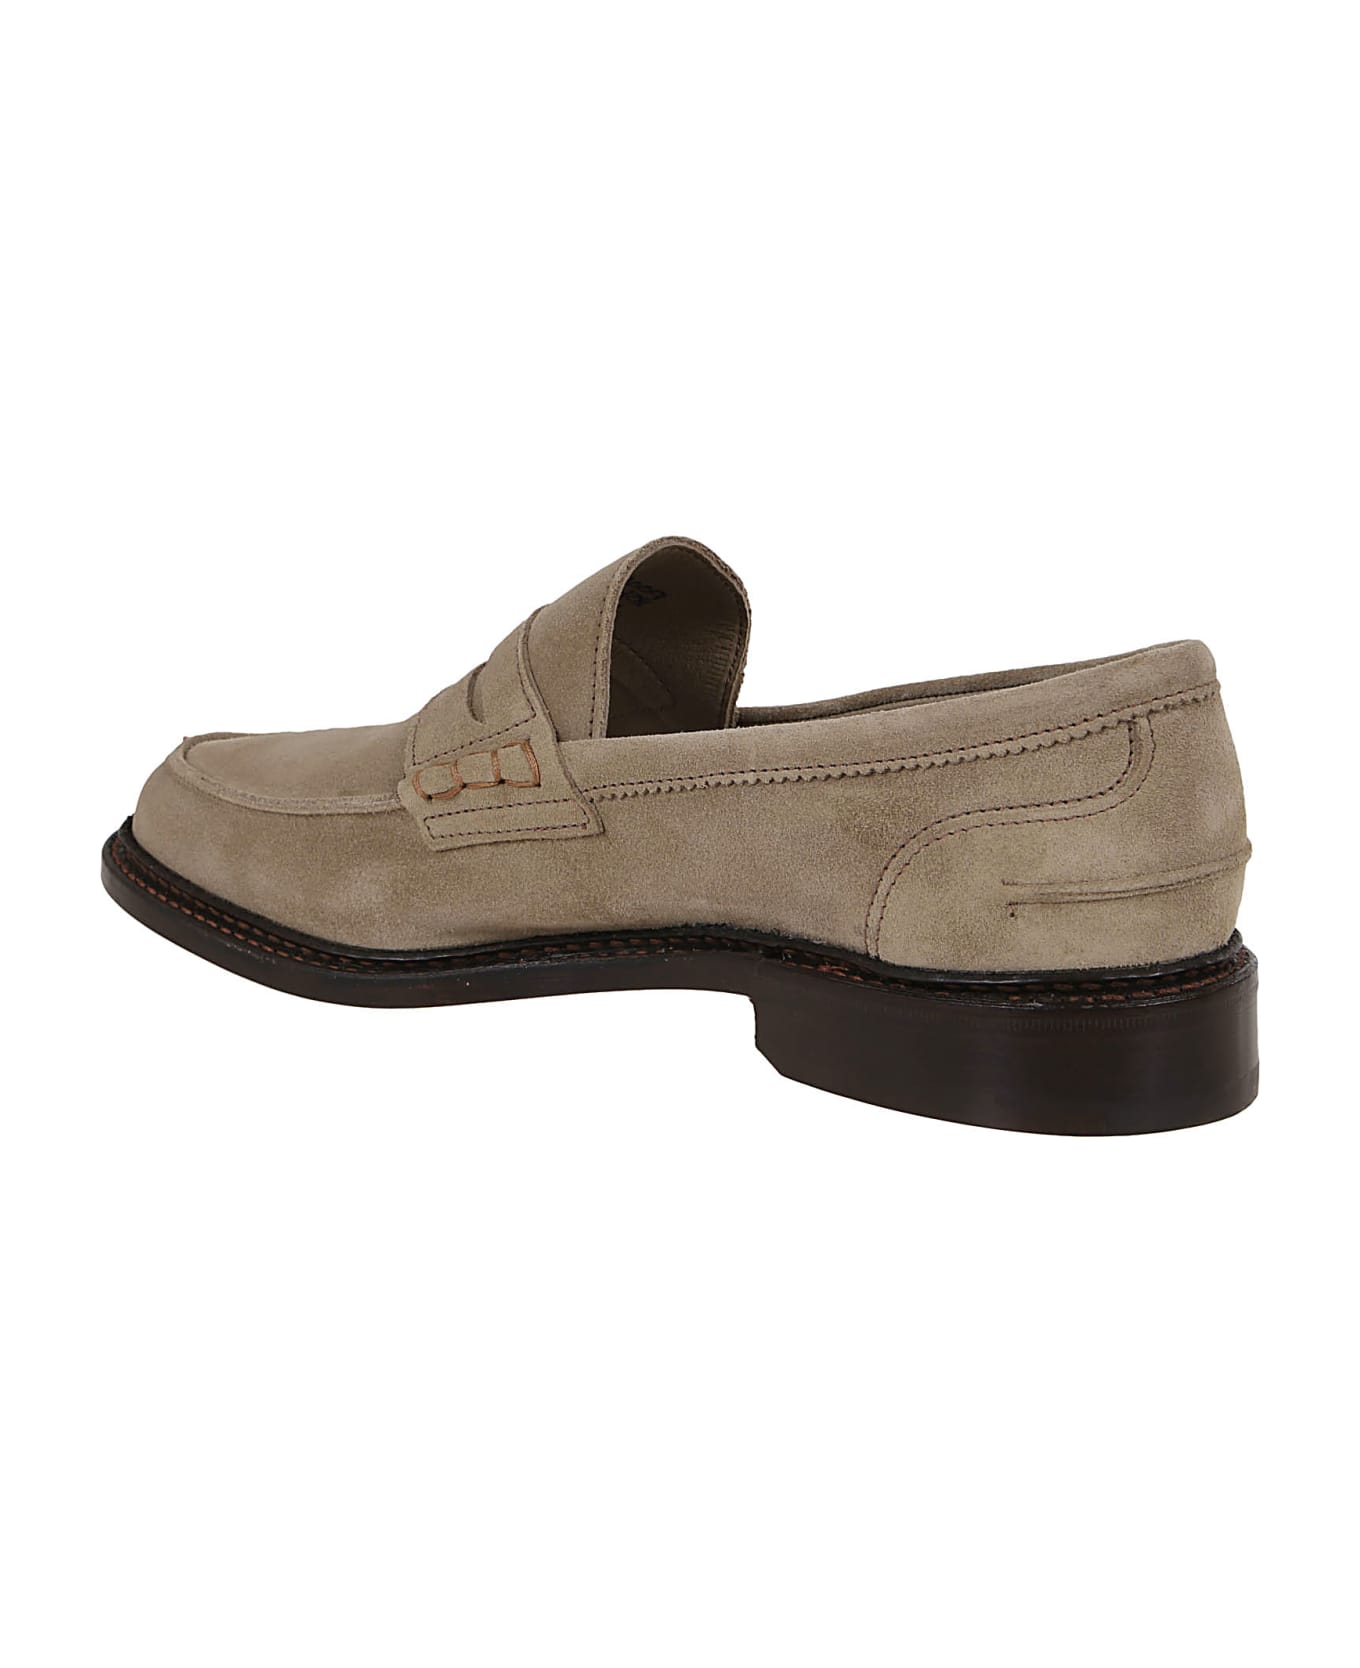 Tricker's Castorino Shoes - Sand